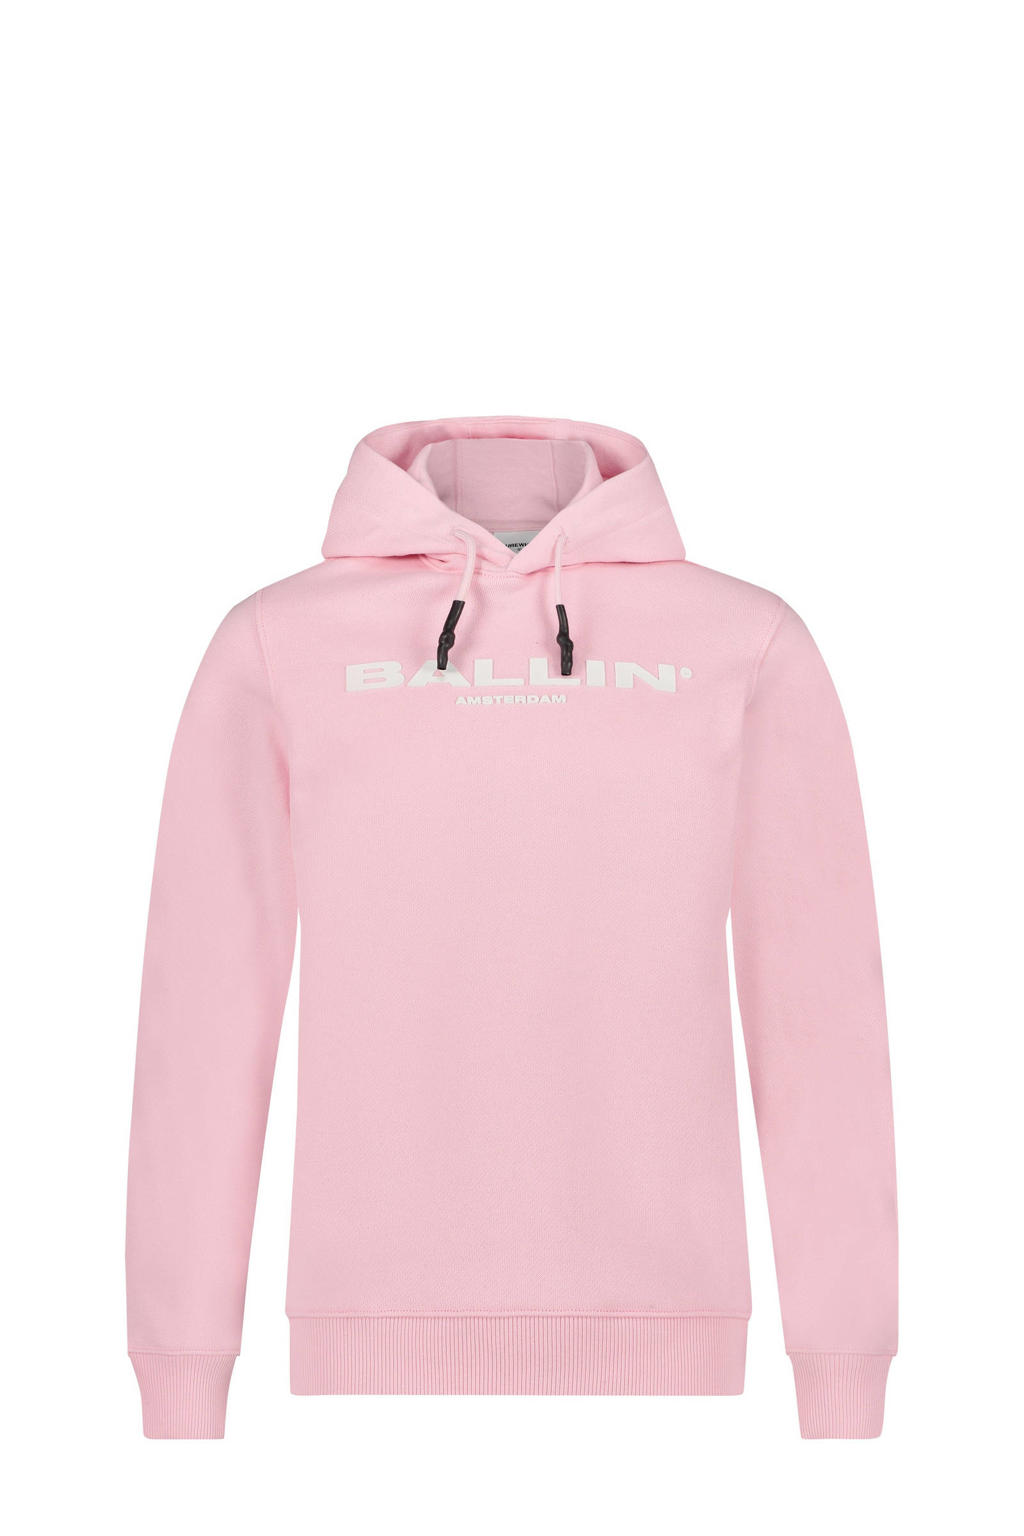 Ballin unisex hoodie met logo lichtroze